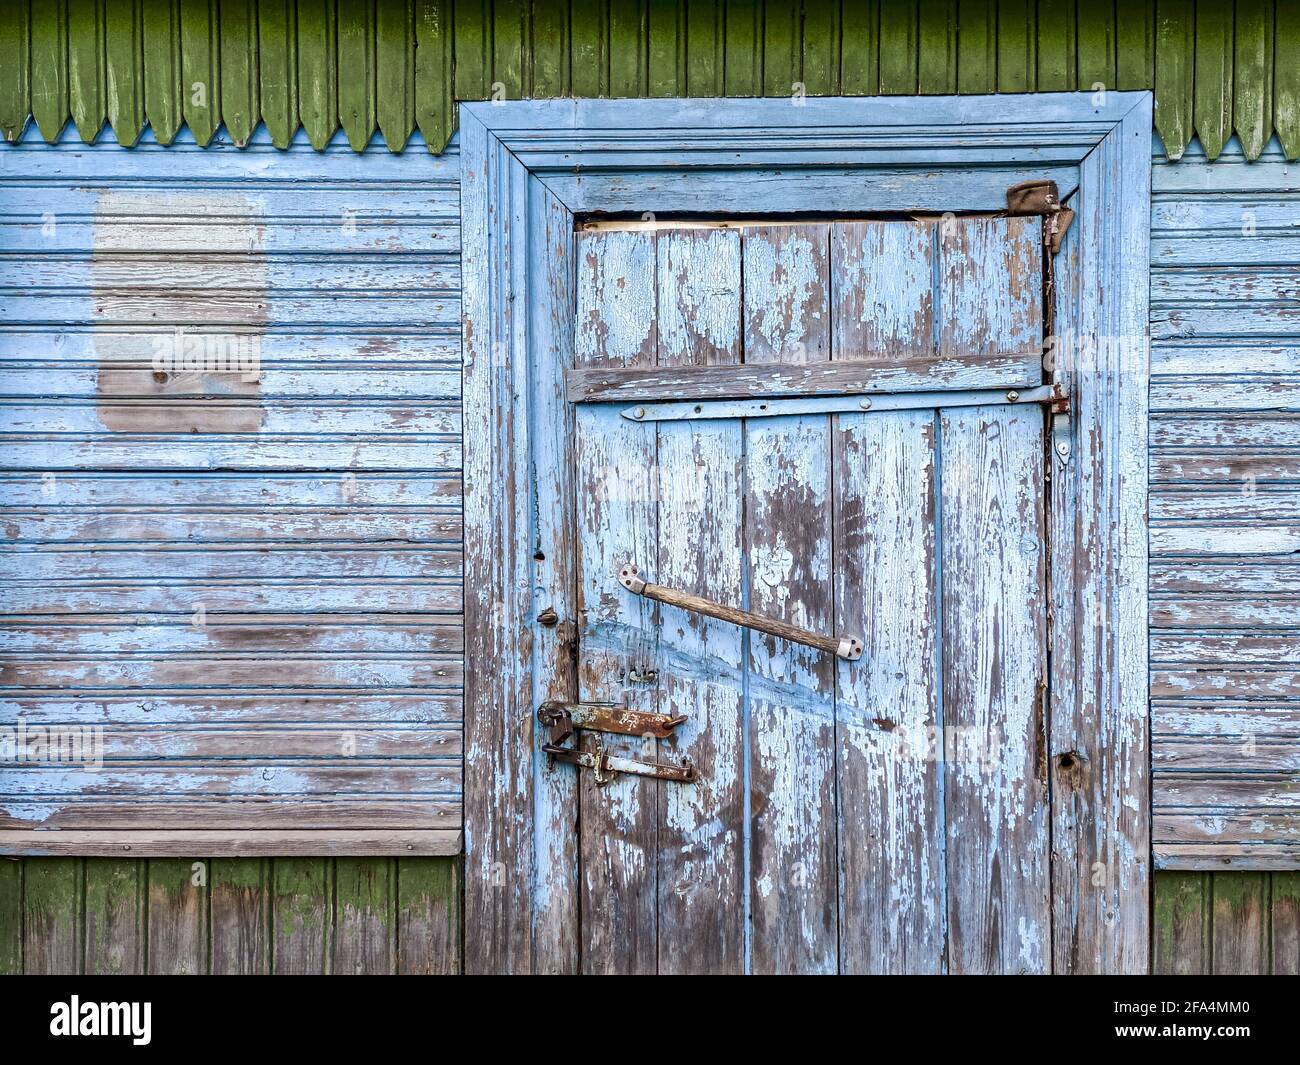 porte fermée avec cadenas sur une grange en bois aux intempéries peinte en bleu mur Banque D'Images